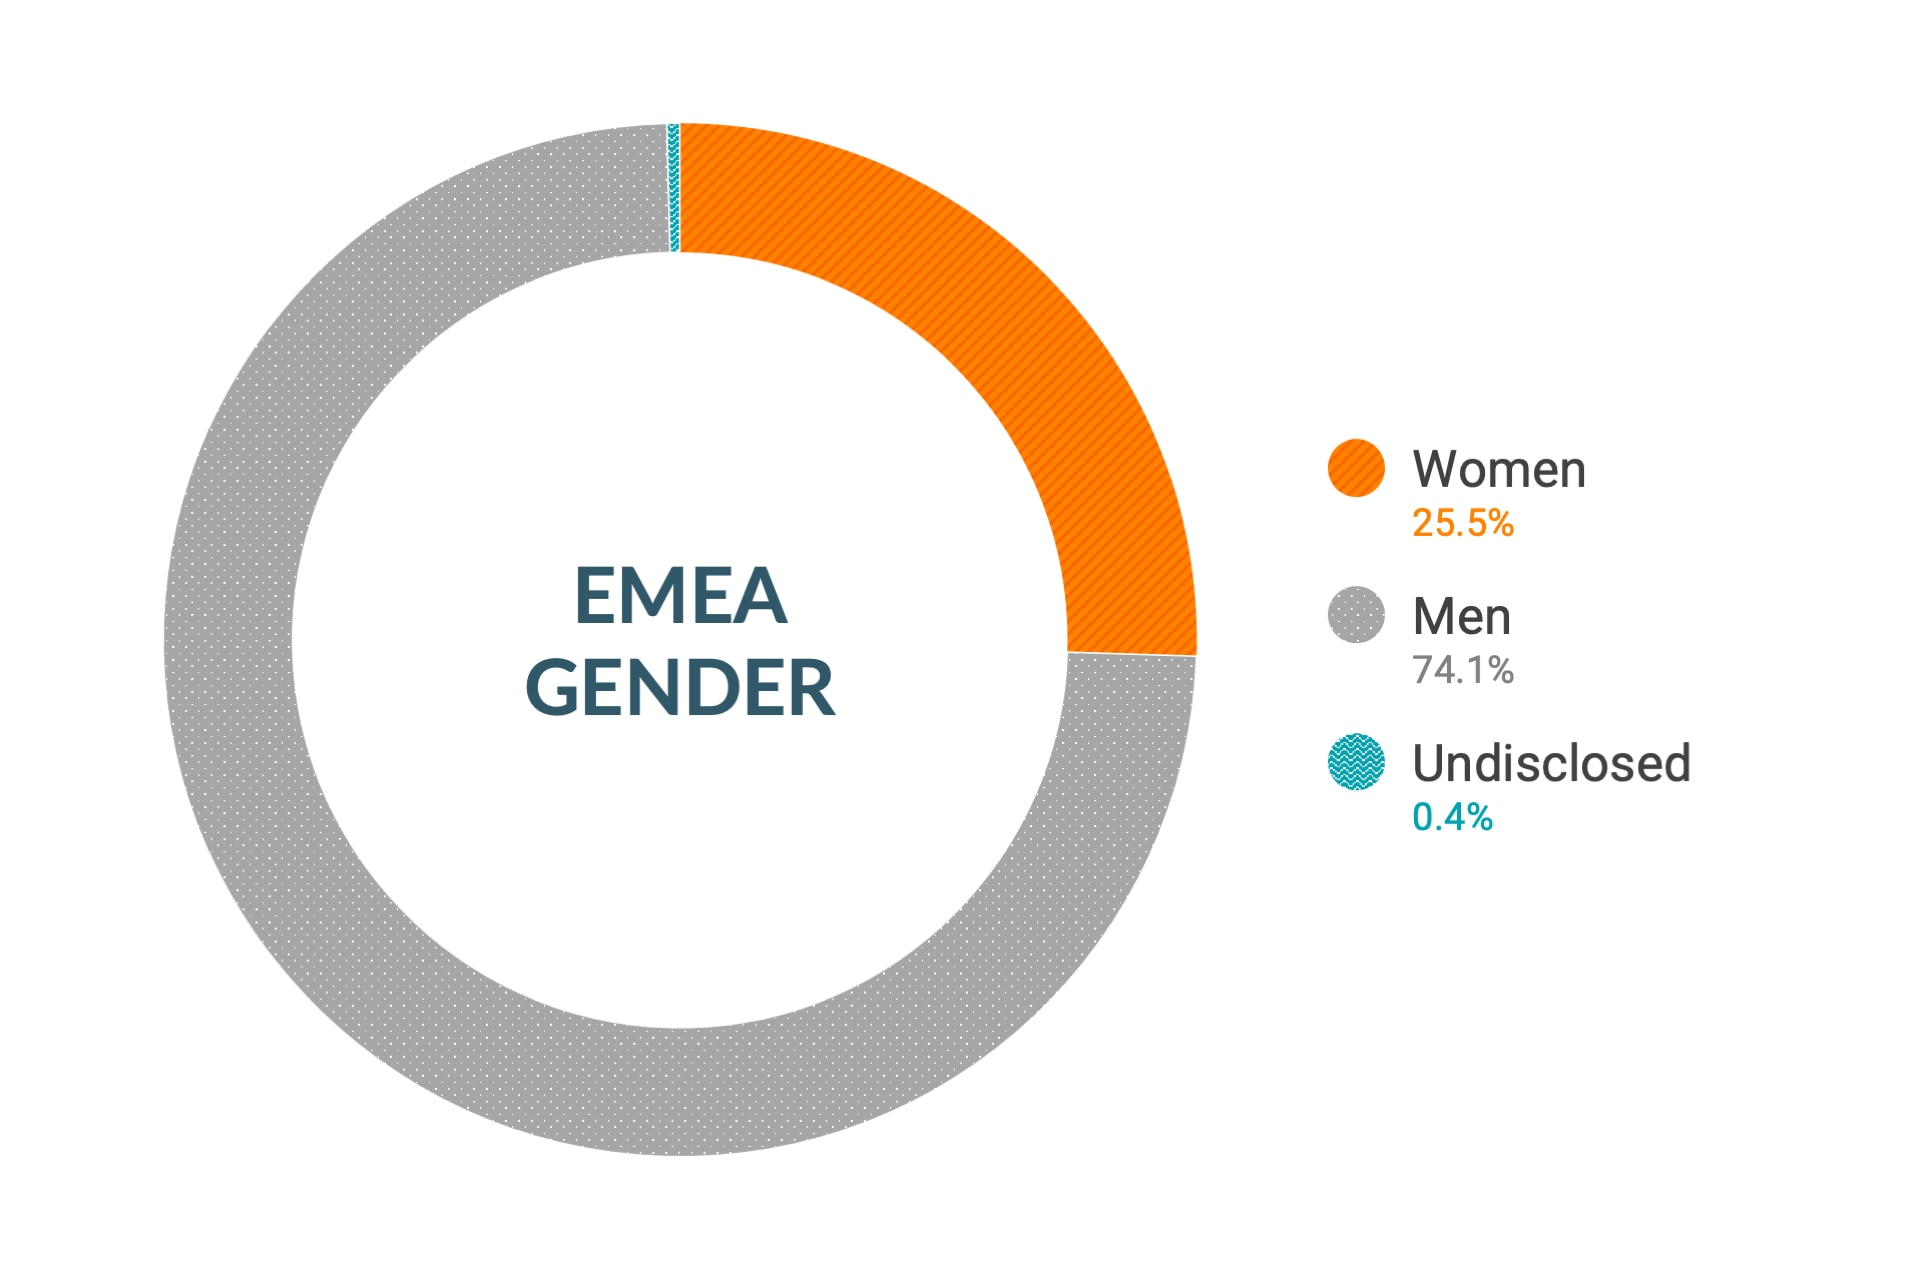 Dati Cloudera su diversità di genere e inclusione in EMEA: donne 25,5%, uomini 74,1%, non dichiarato 0,4%